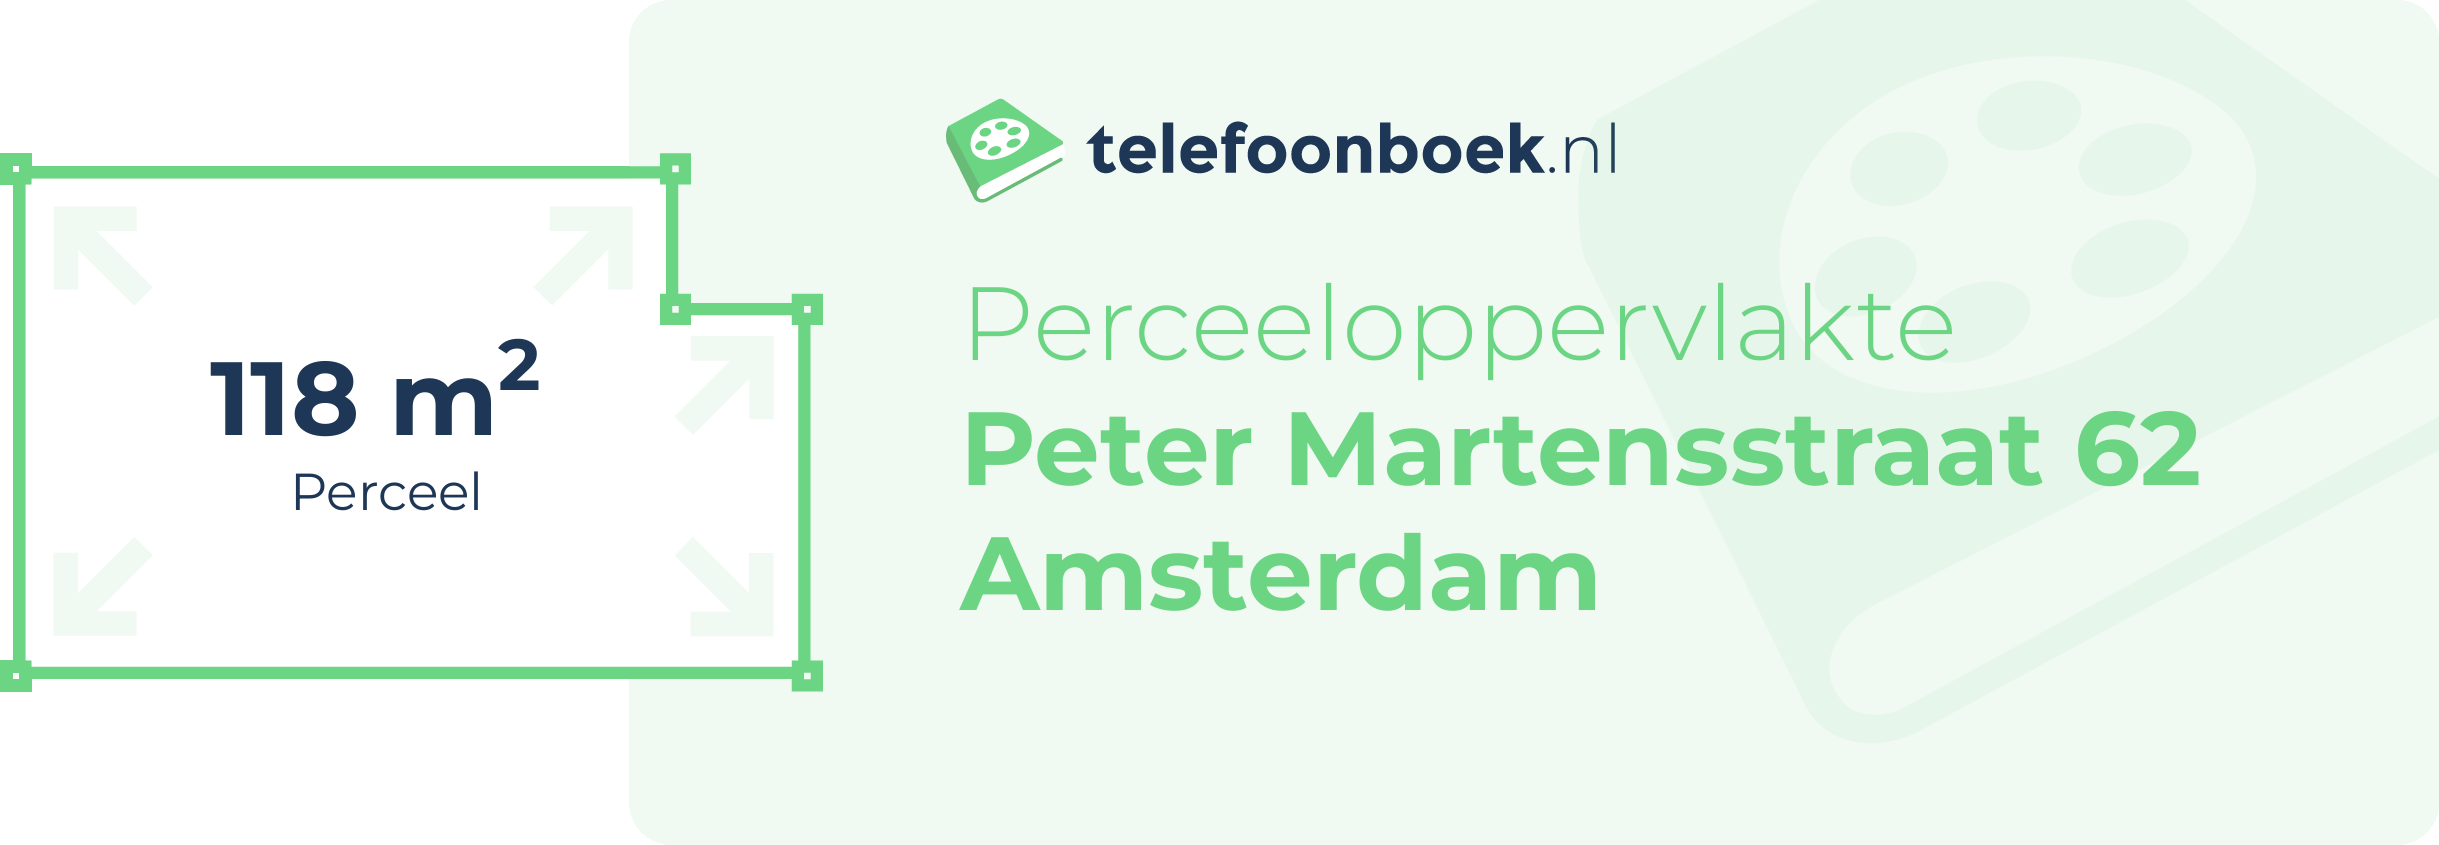 Perceeloppervlakte Peter Martensstraat 62 Amsterdam